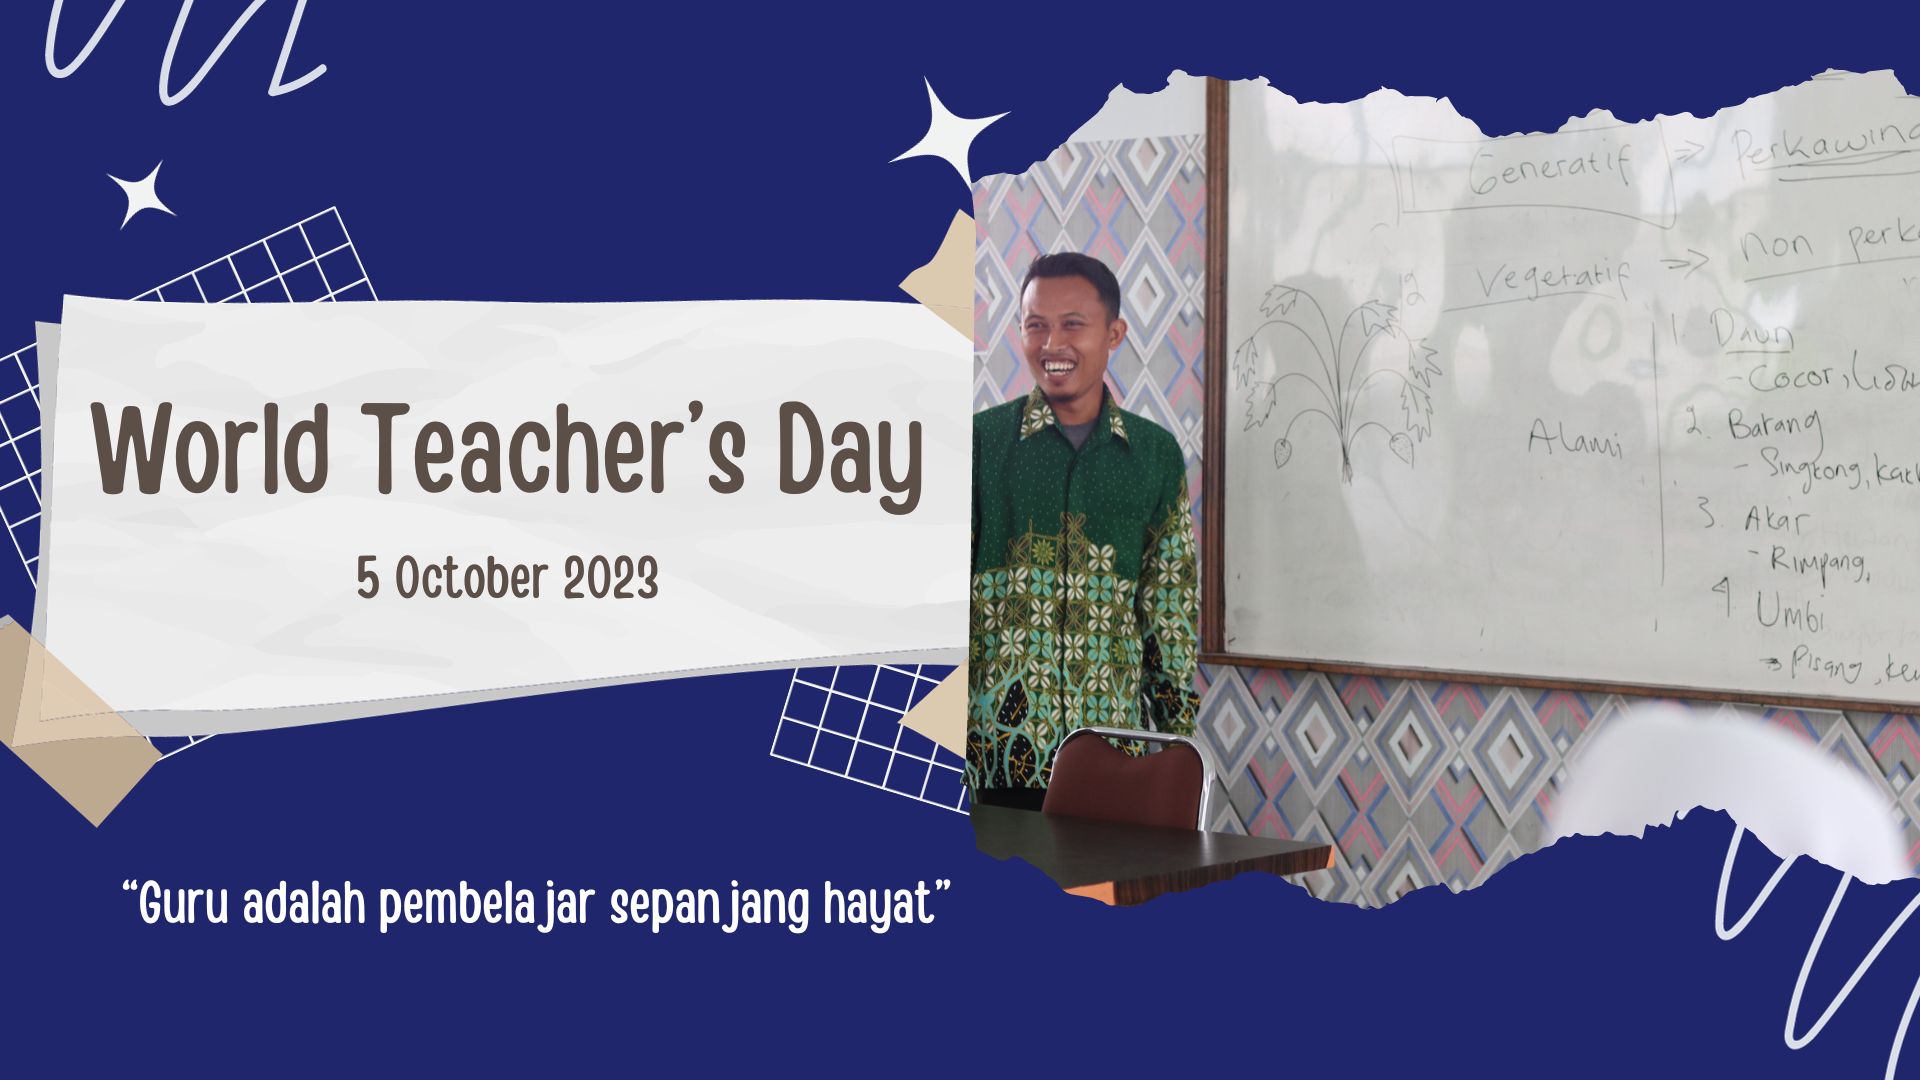 Celebrating World Teacher’s Day